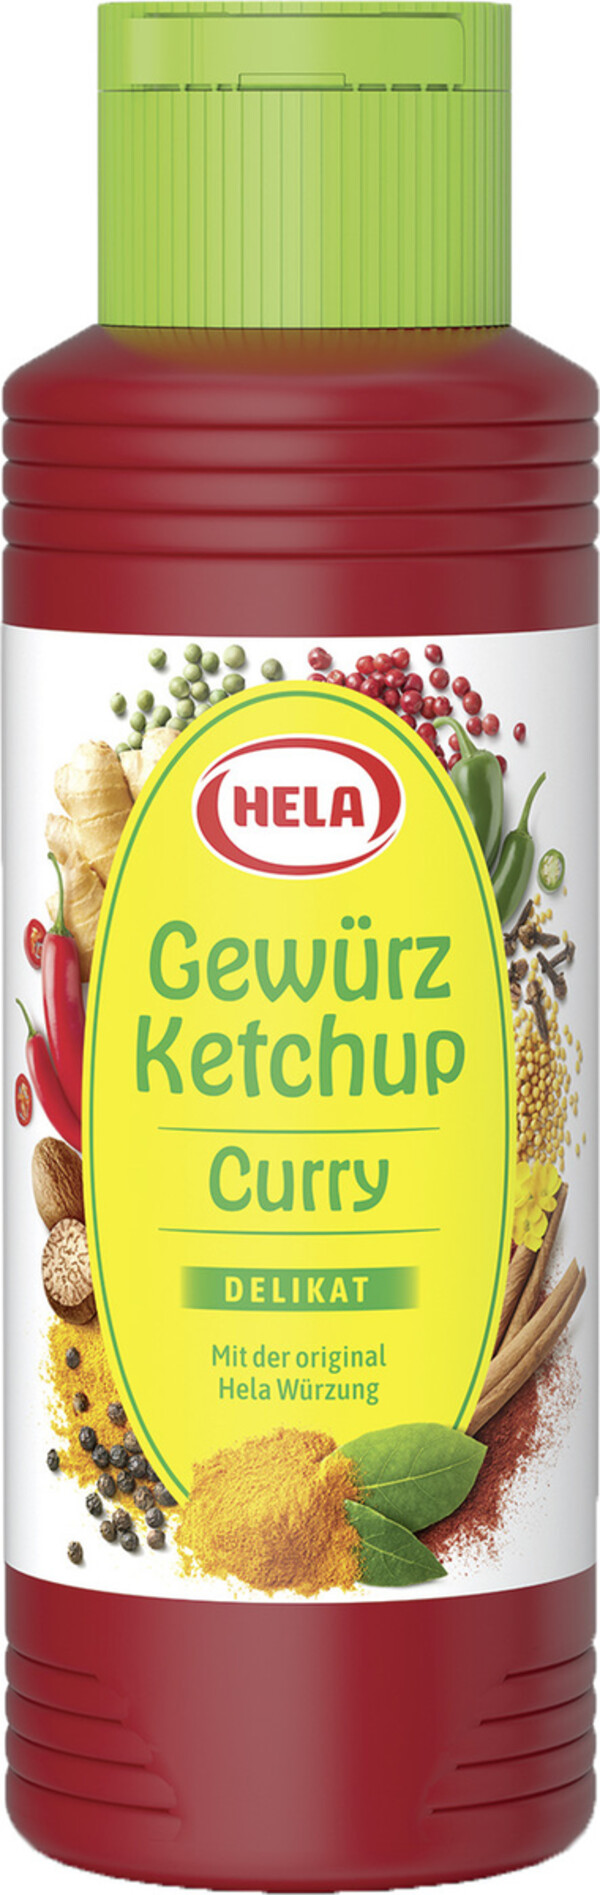 Hela Curry Gewürzketchup Delikat 300 ml von Edeka24 für 1,66 € ansehen!